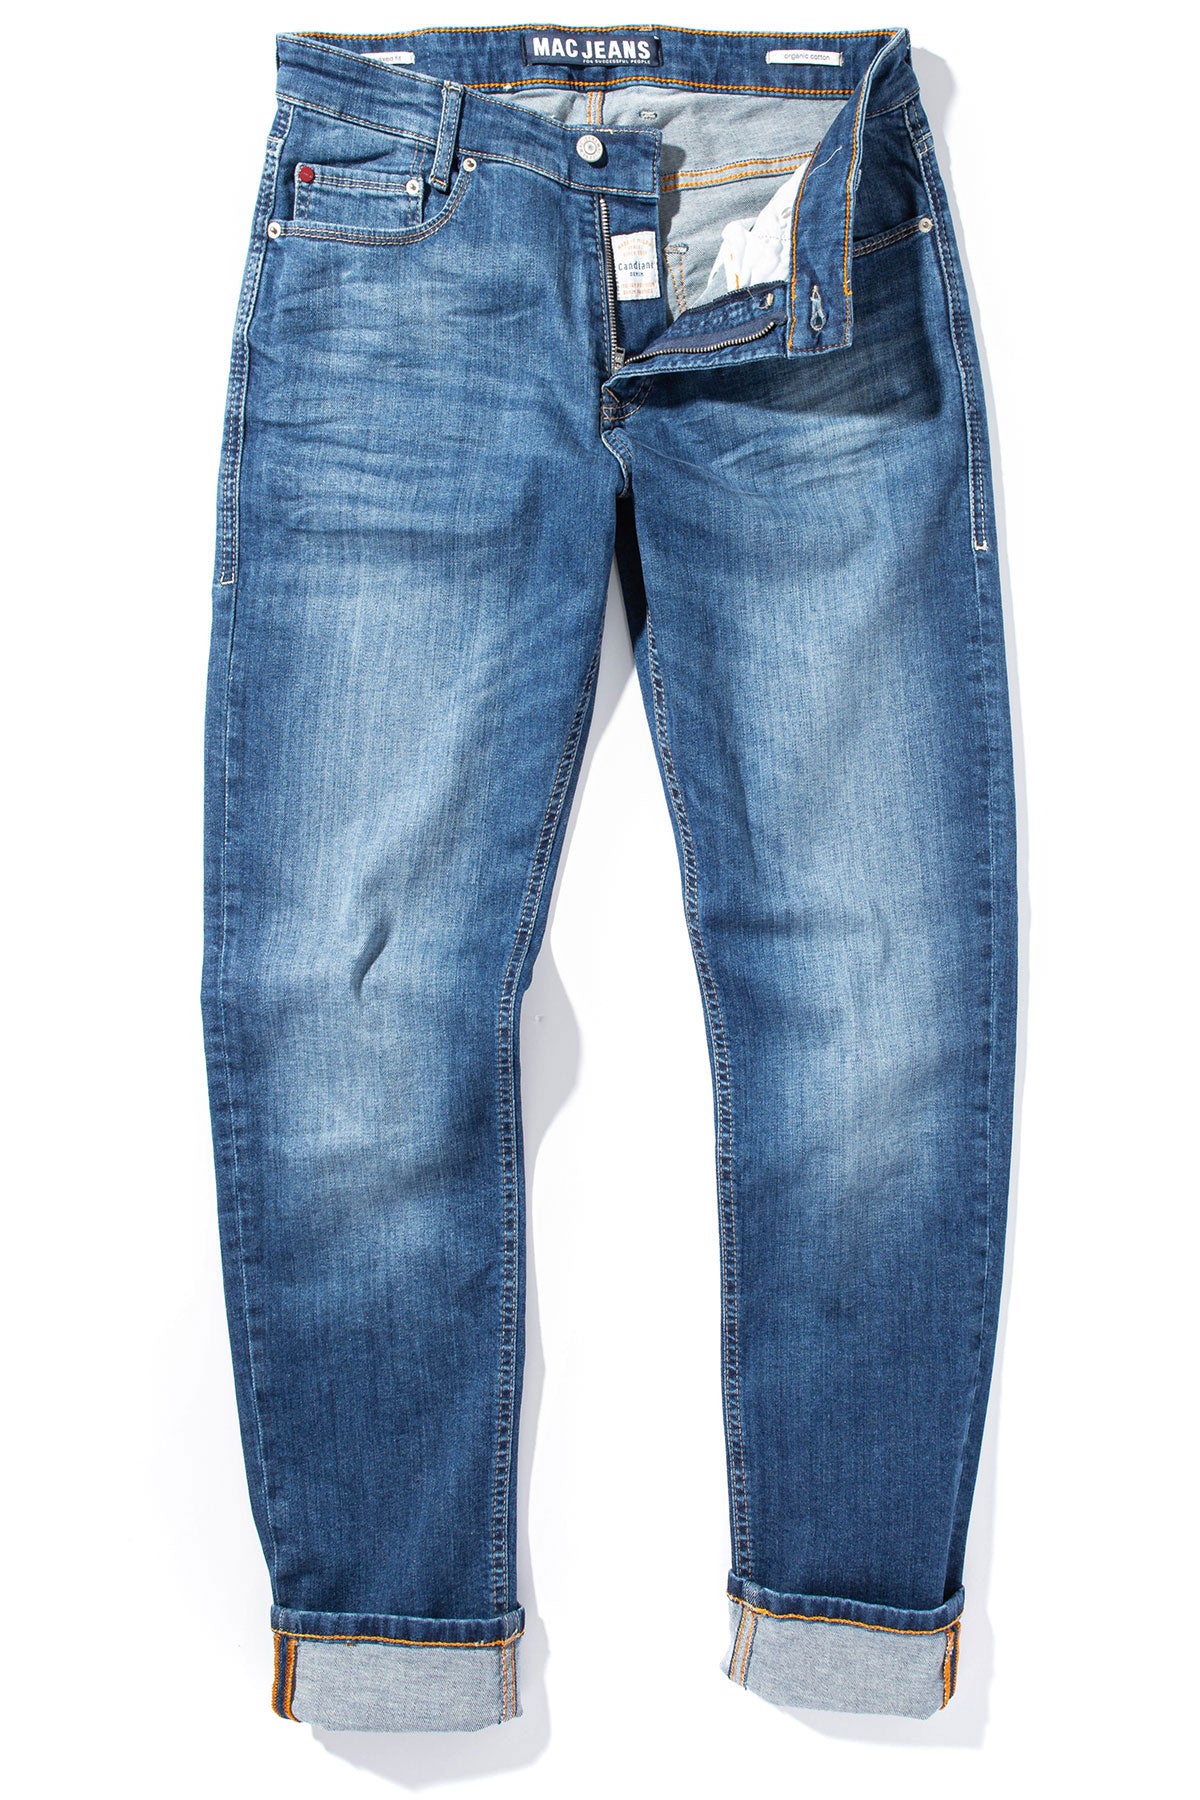 MAC Greg Slim Jeans in Blue Vintage Wash - AXEL'S